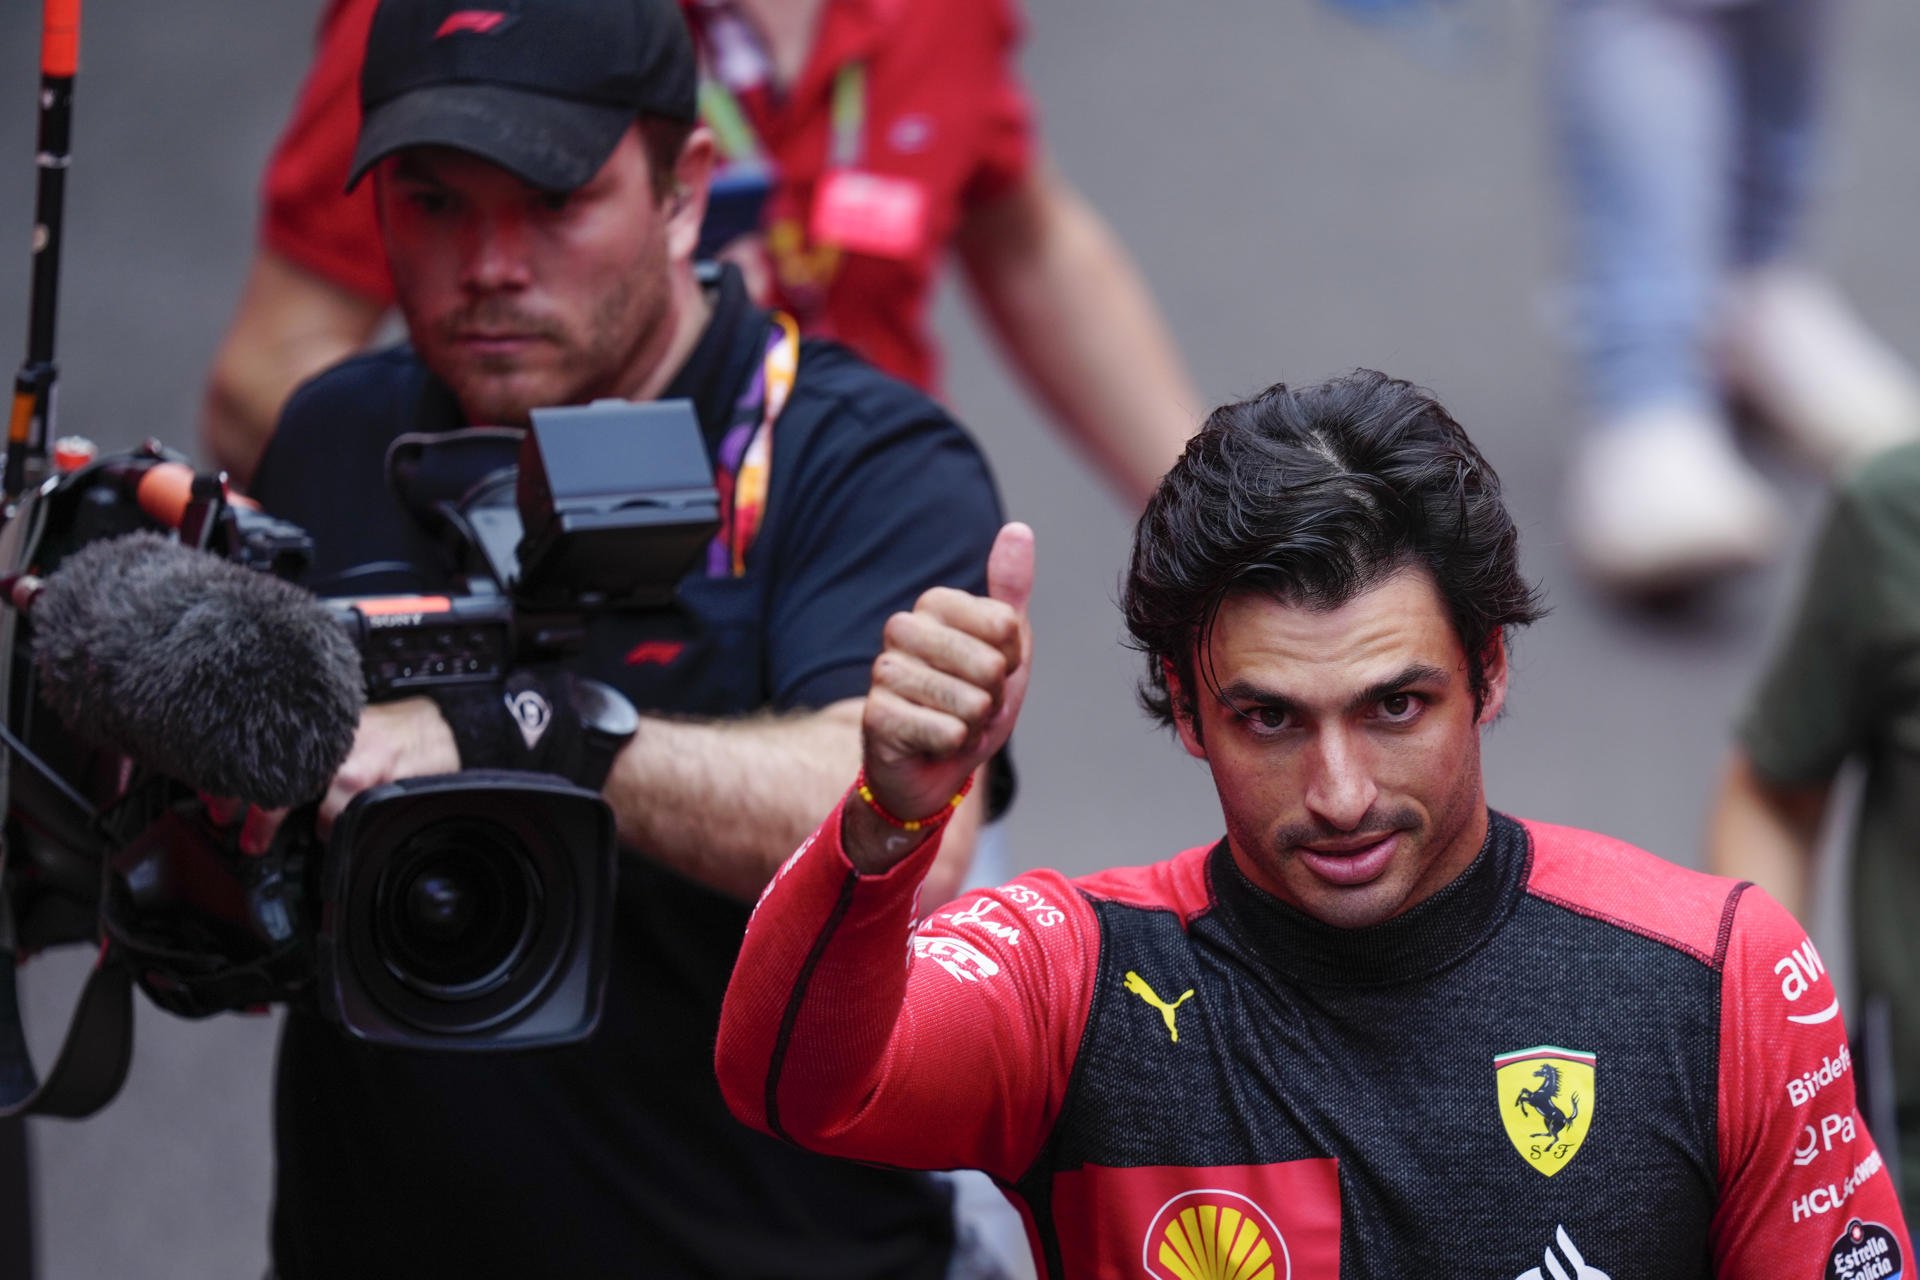 Carlos Sainz ha puesto muy nerviosos a los jefes de Ferrari por dejar en ridículo a Leclerc en el box